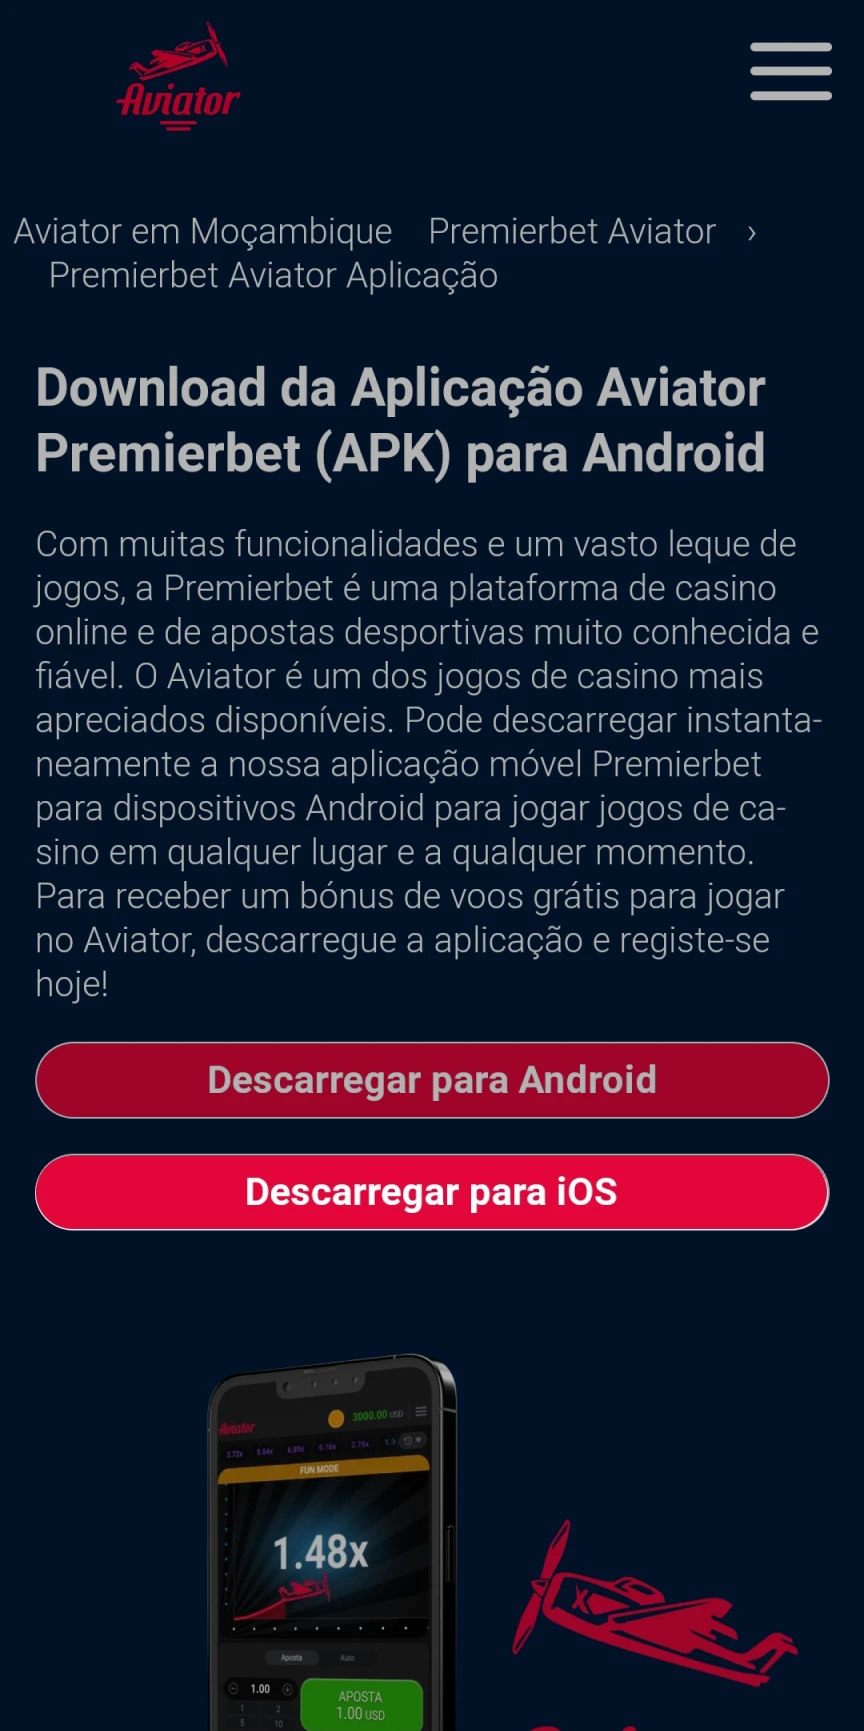 Visite a página inicial da Premierbet para baixar o aplicativo iOS.